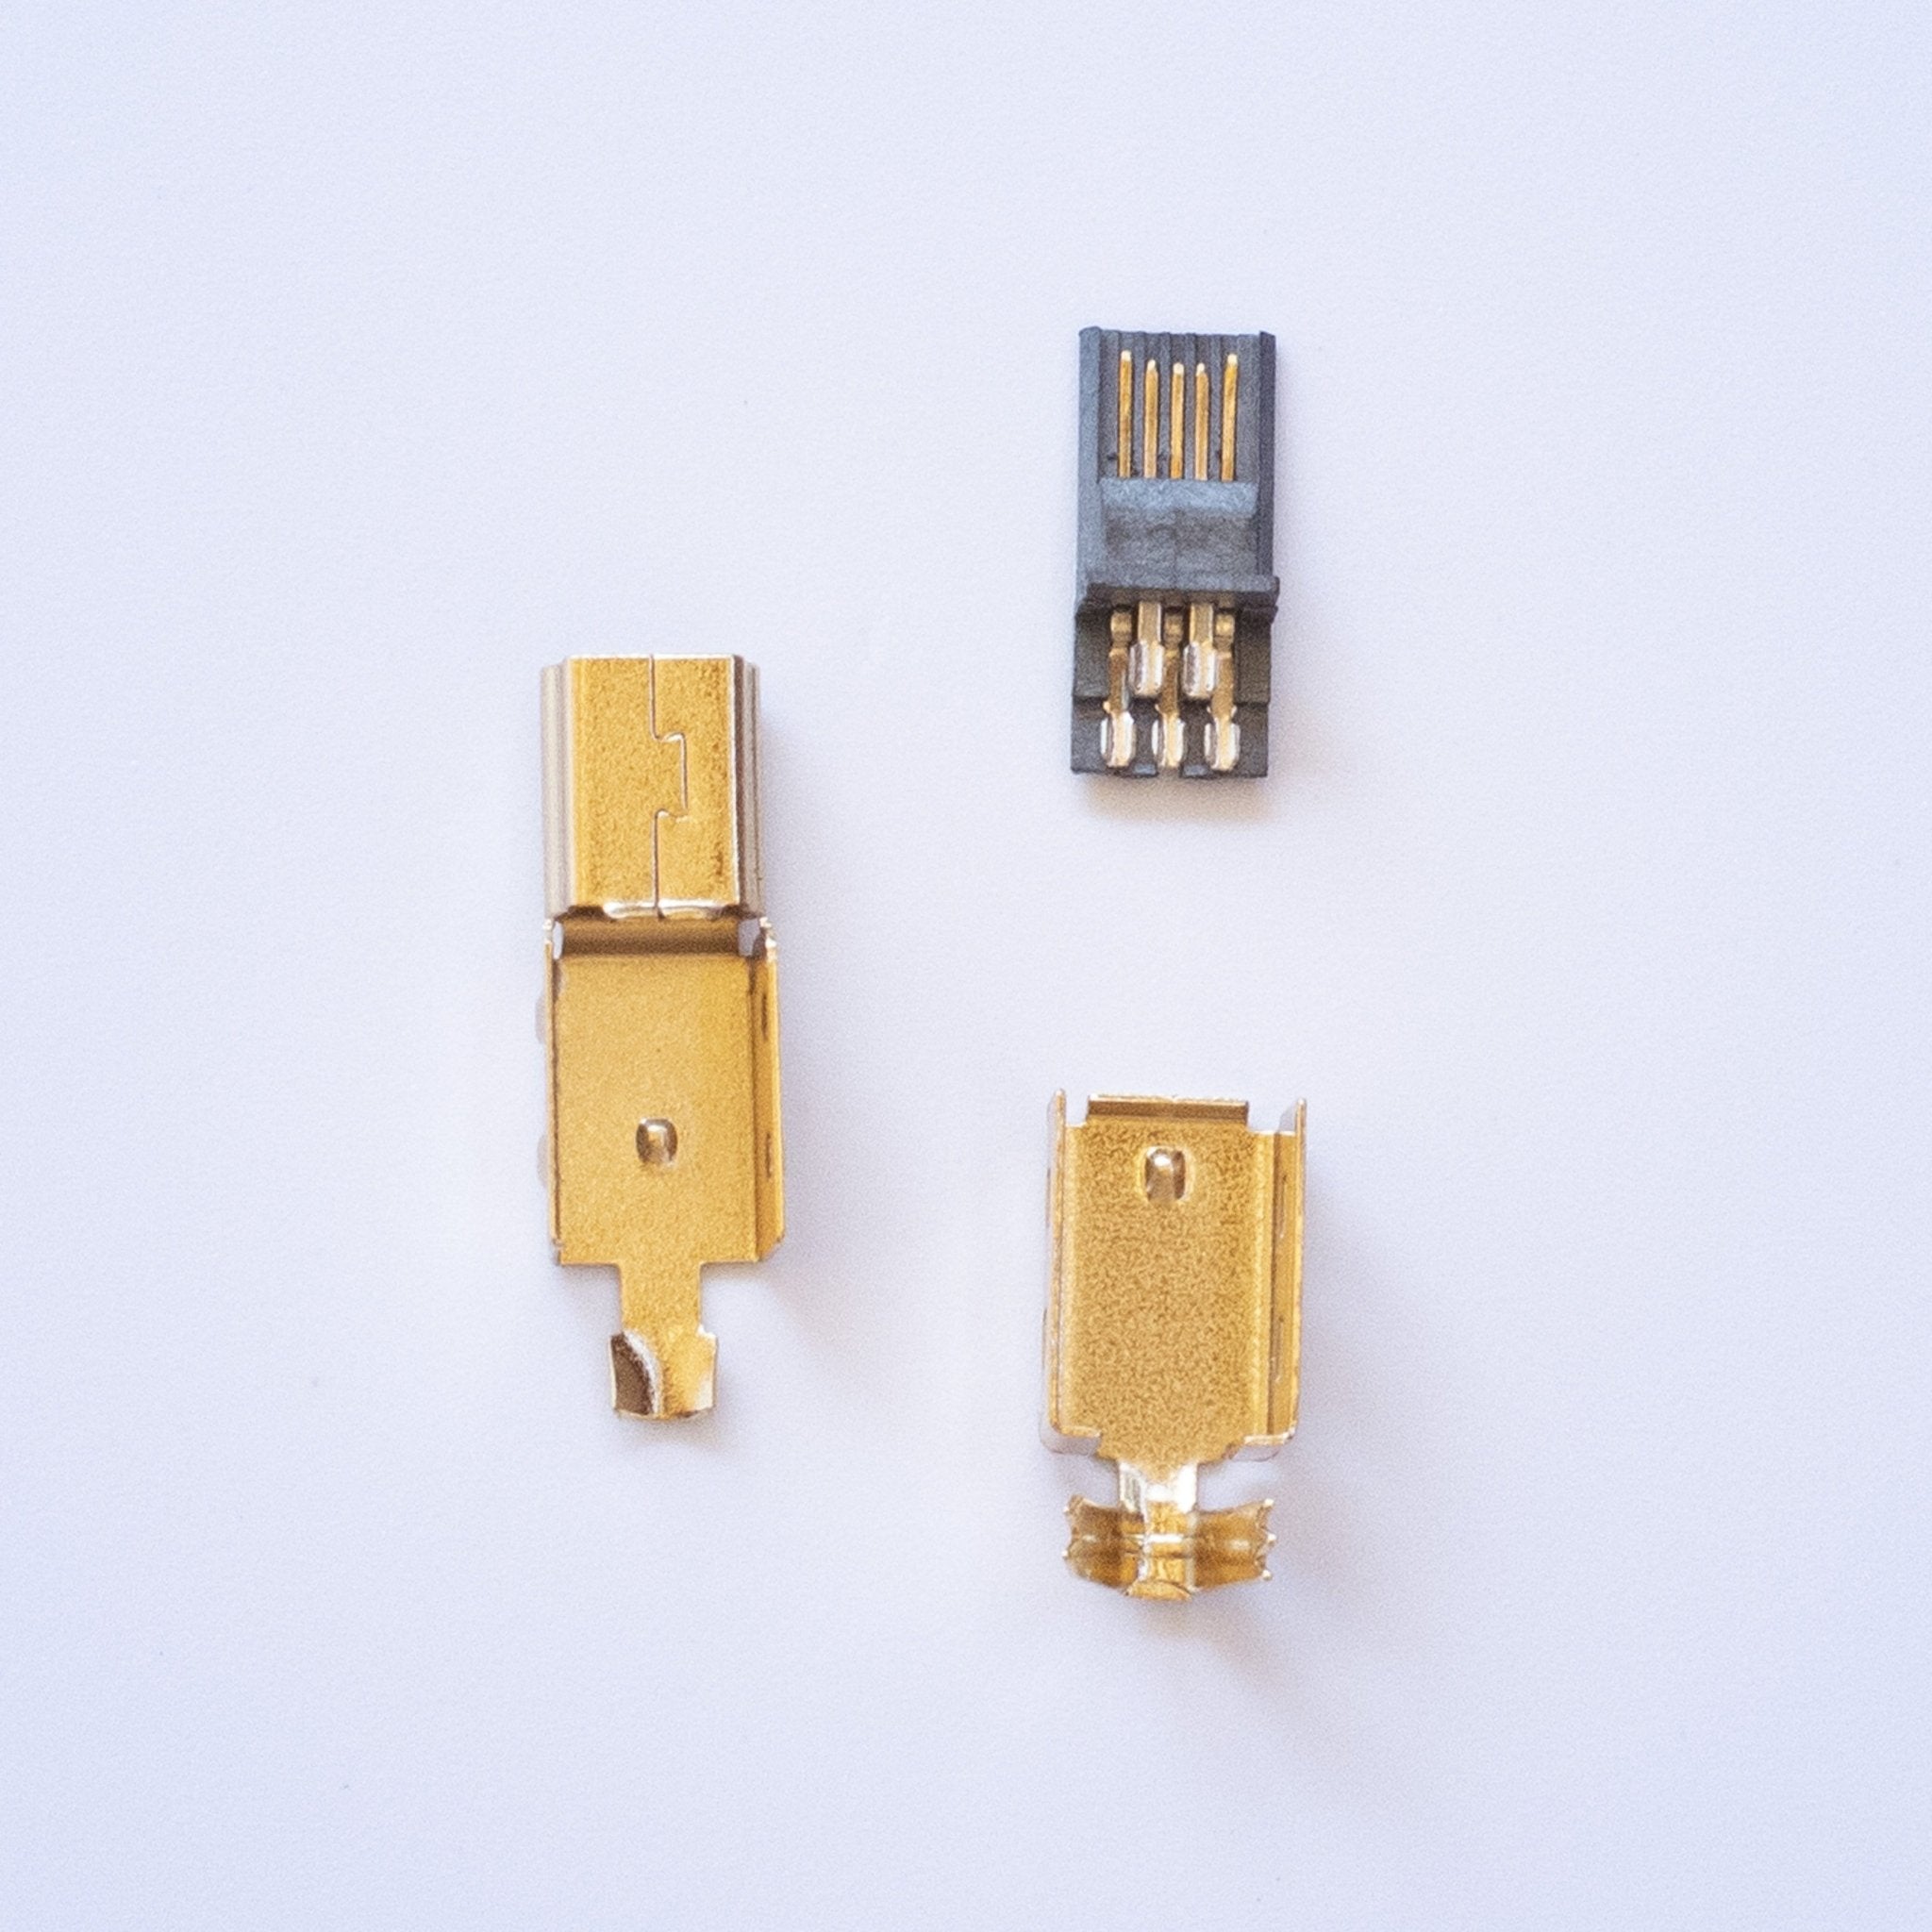 USB connectors - Kat Koil